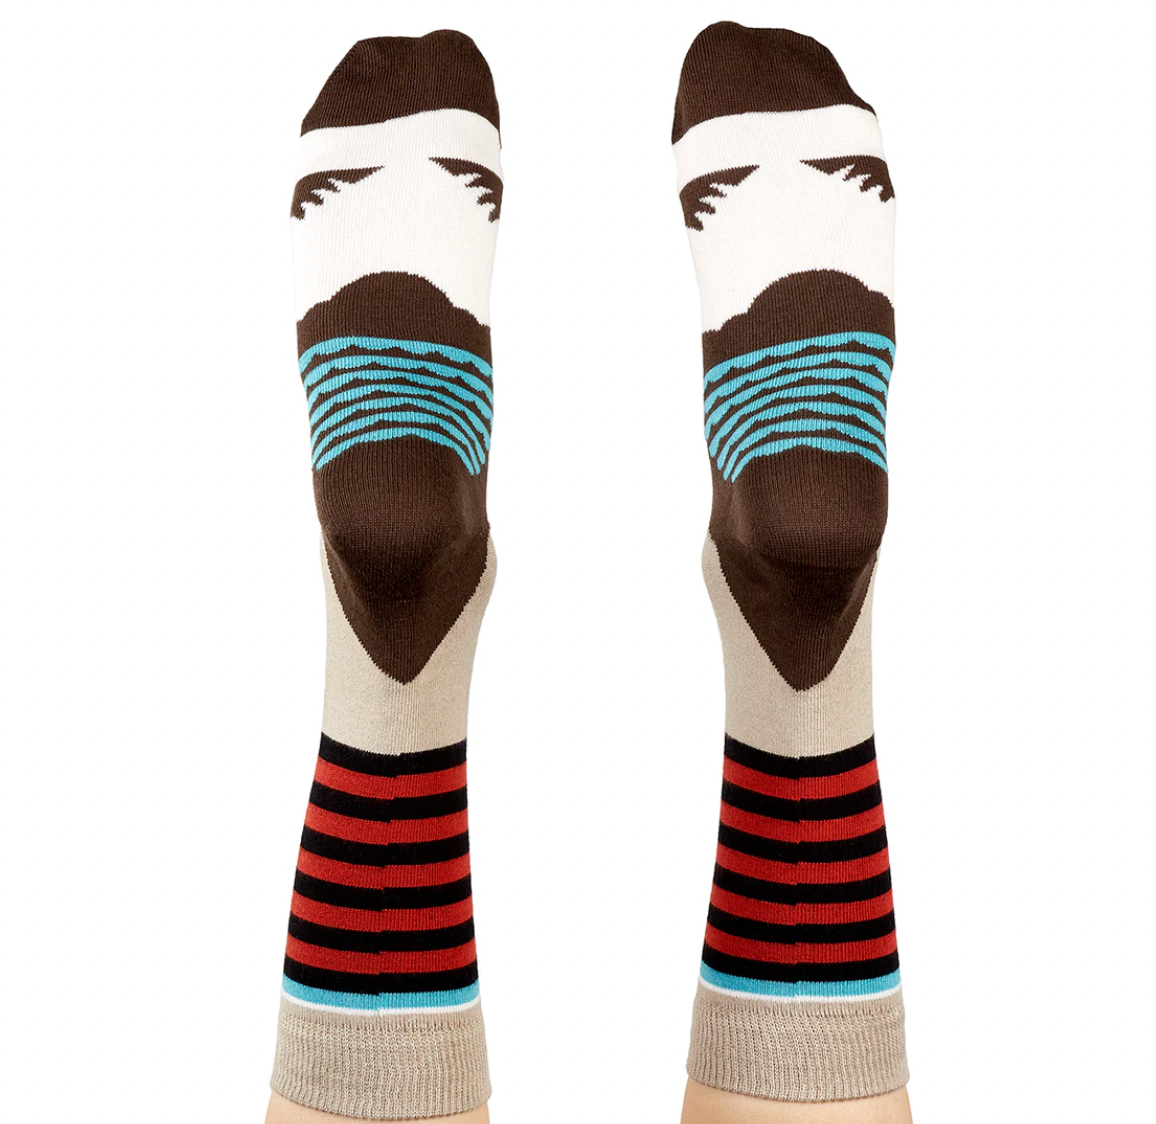 Kookaburra - Aussie Socks - Australiana Collection